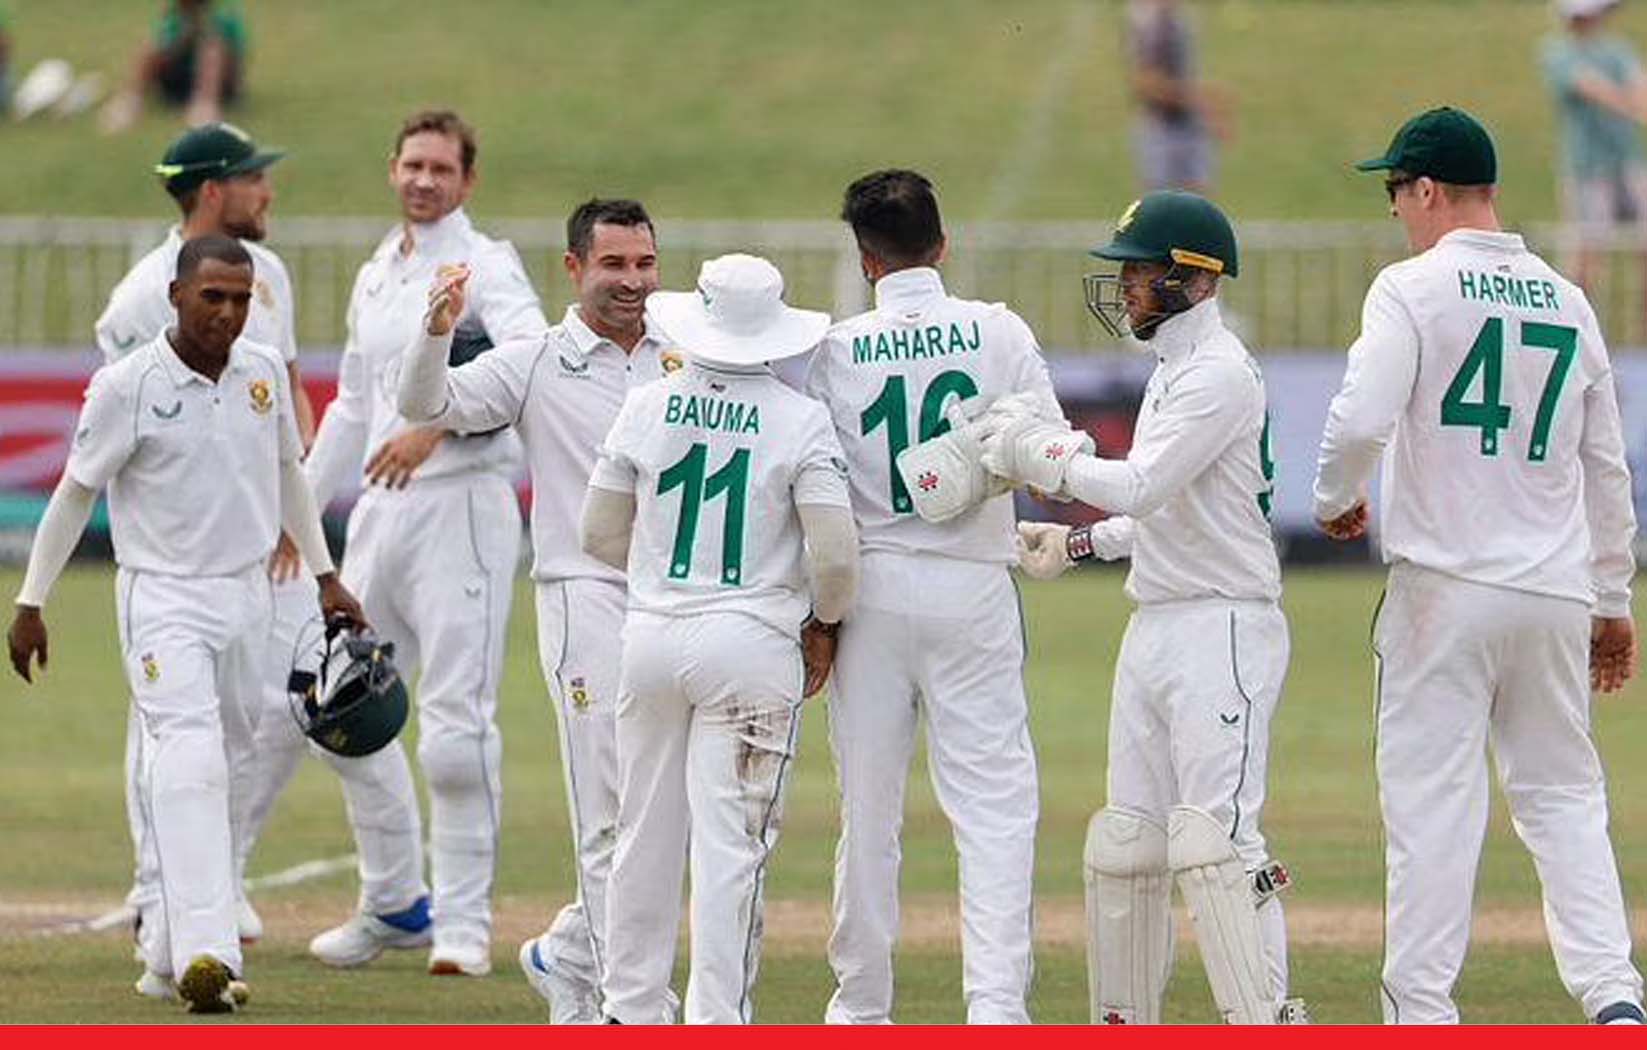 अंपायरिंग और स्लेजिंग को लेकर बढ़ा विवाद, बांग्लादेश क्रिकेट बोर्ड करेगा ICC से शिकायत